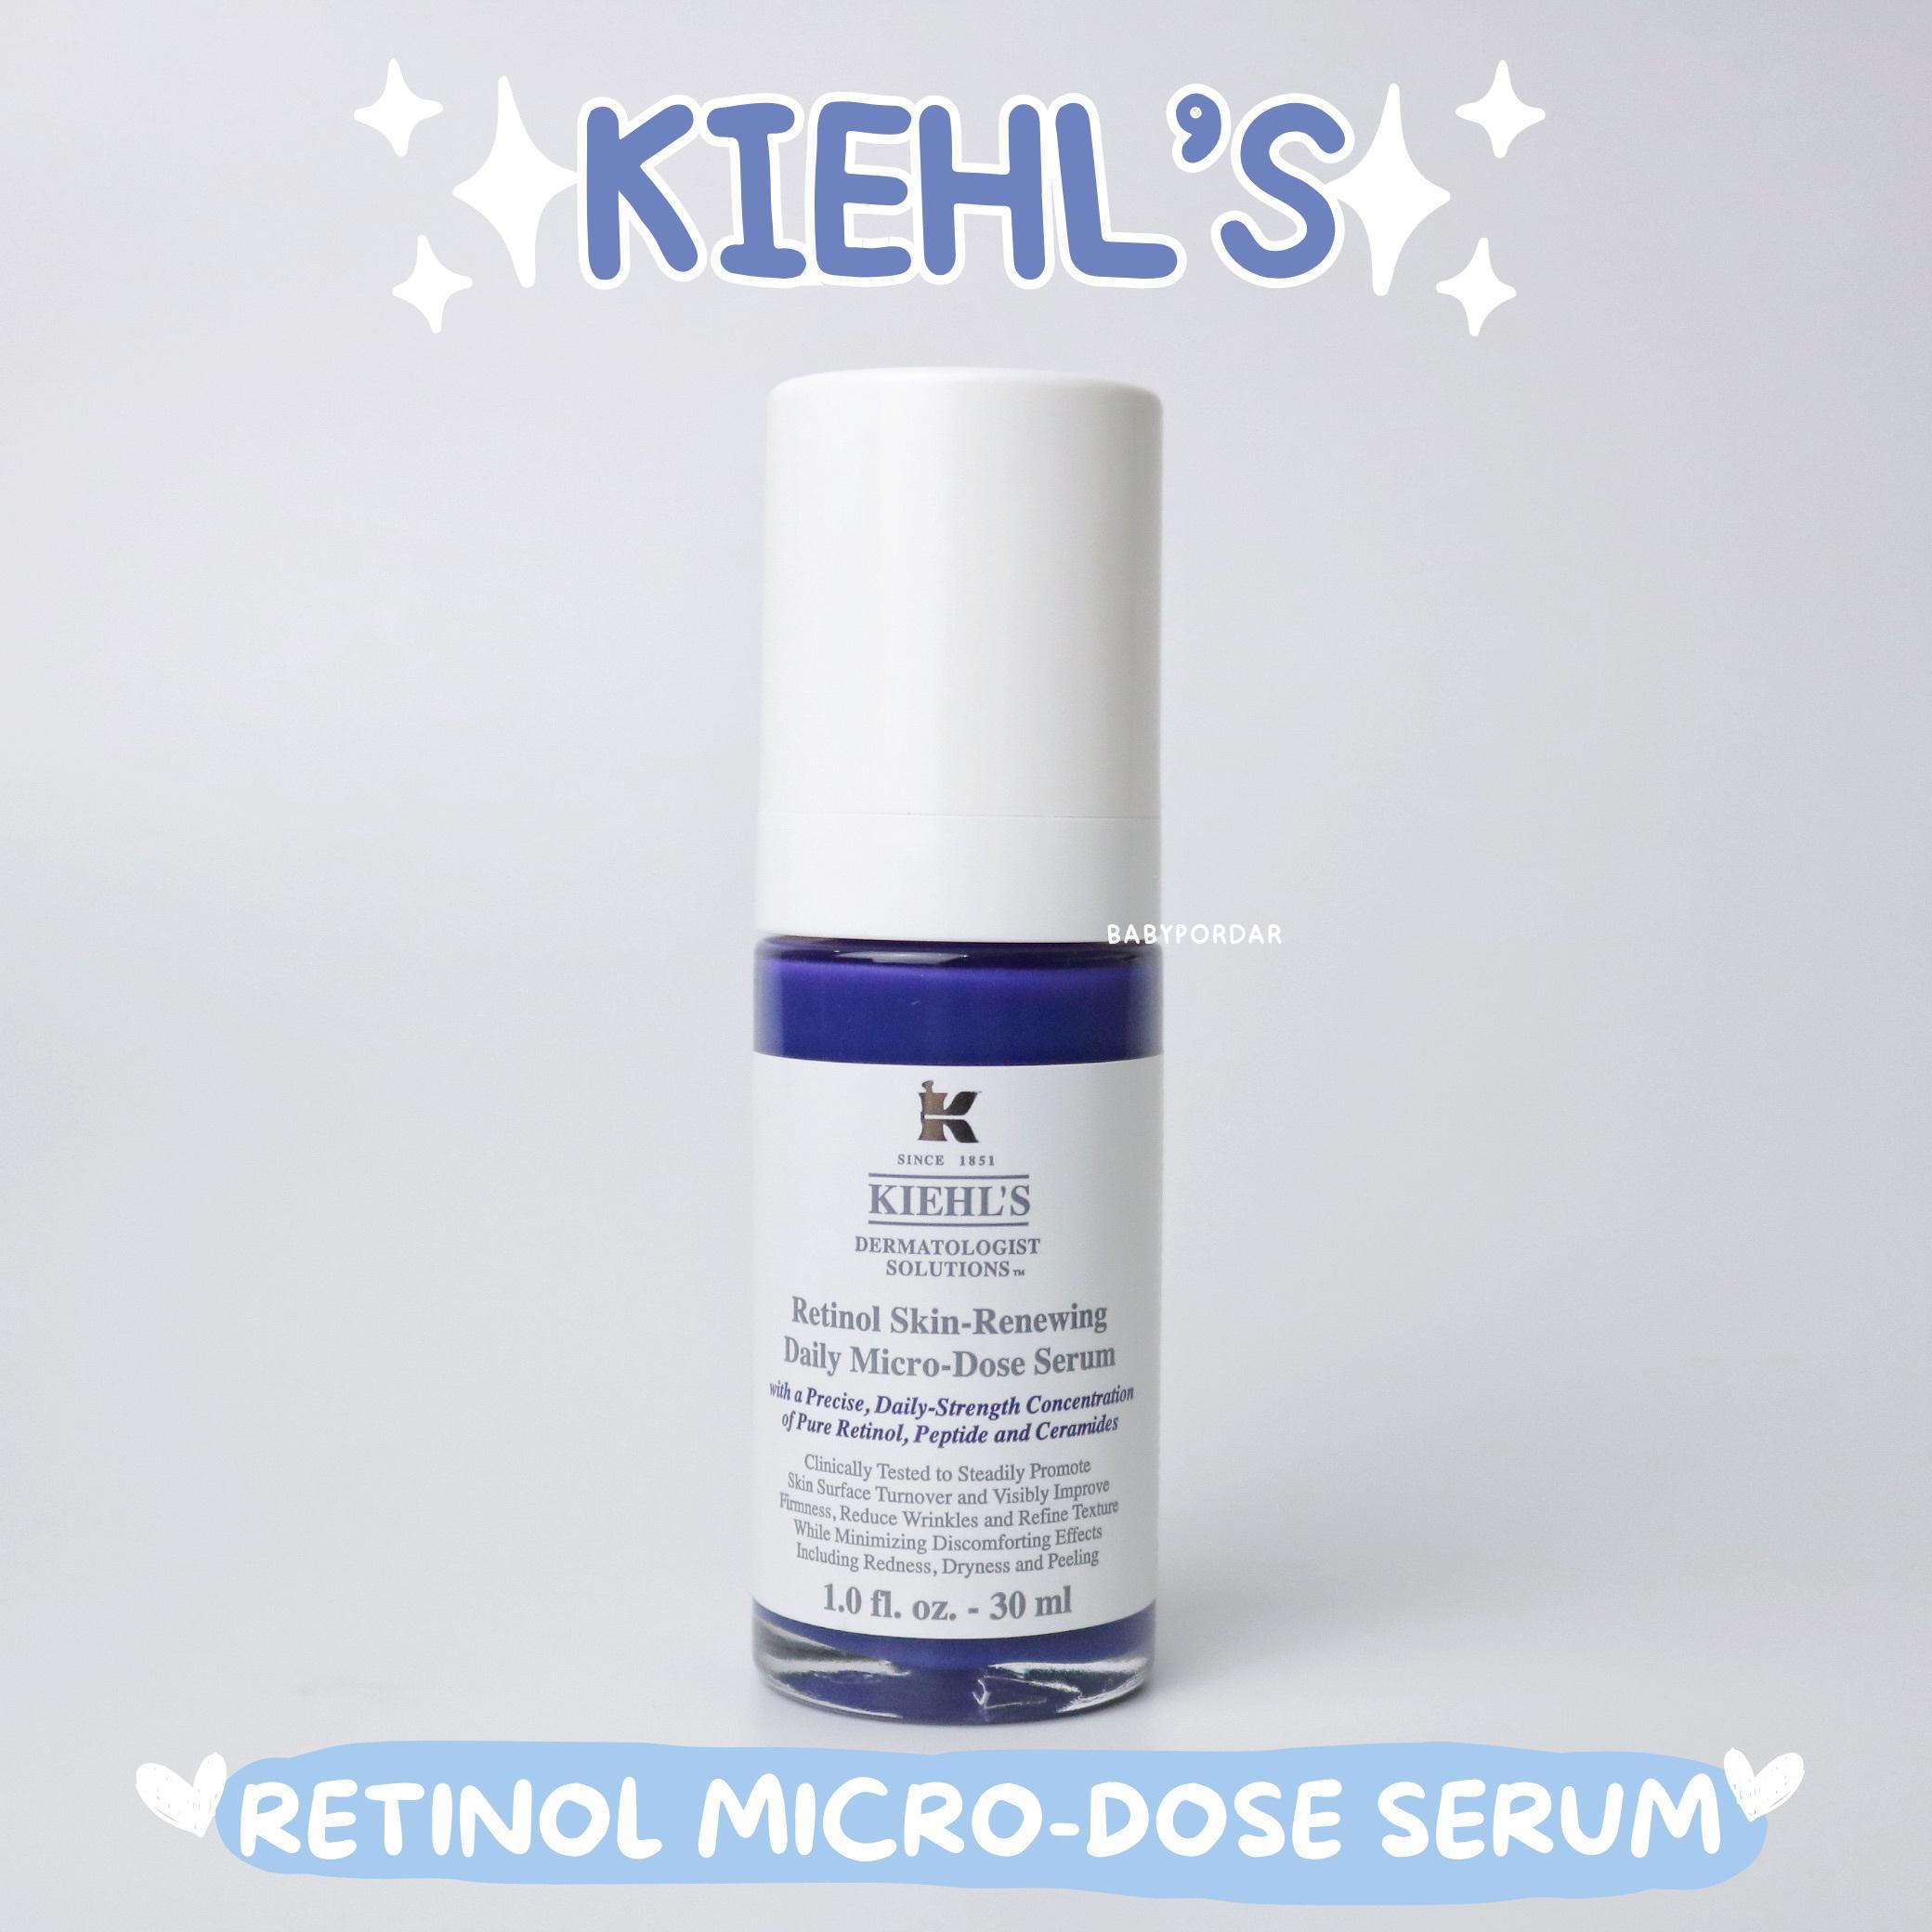 ภาพหน้าปก รีวิวเรตินอลฟื้นผิวพังให้กลับมาสดใส ใน 2 week! - Kiehl's “Retinol Skin Renewing Daily Micro-dose Serum” ที่:1